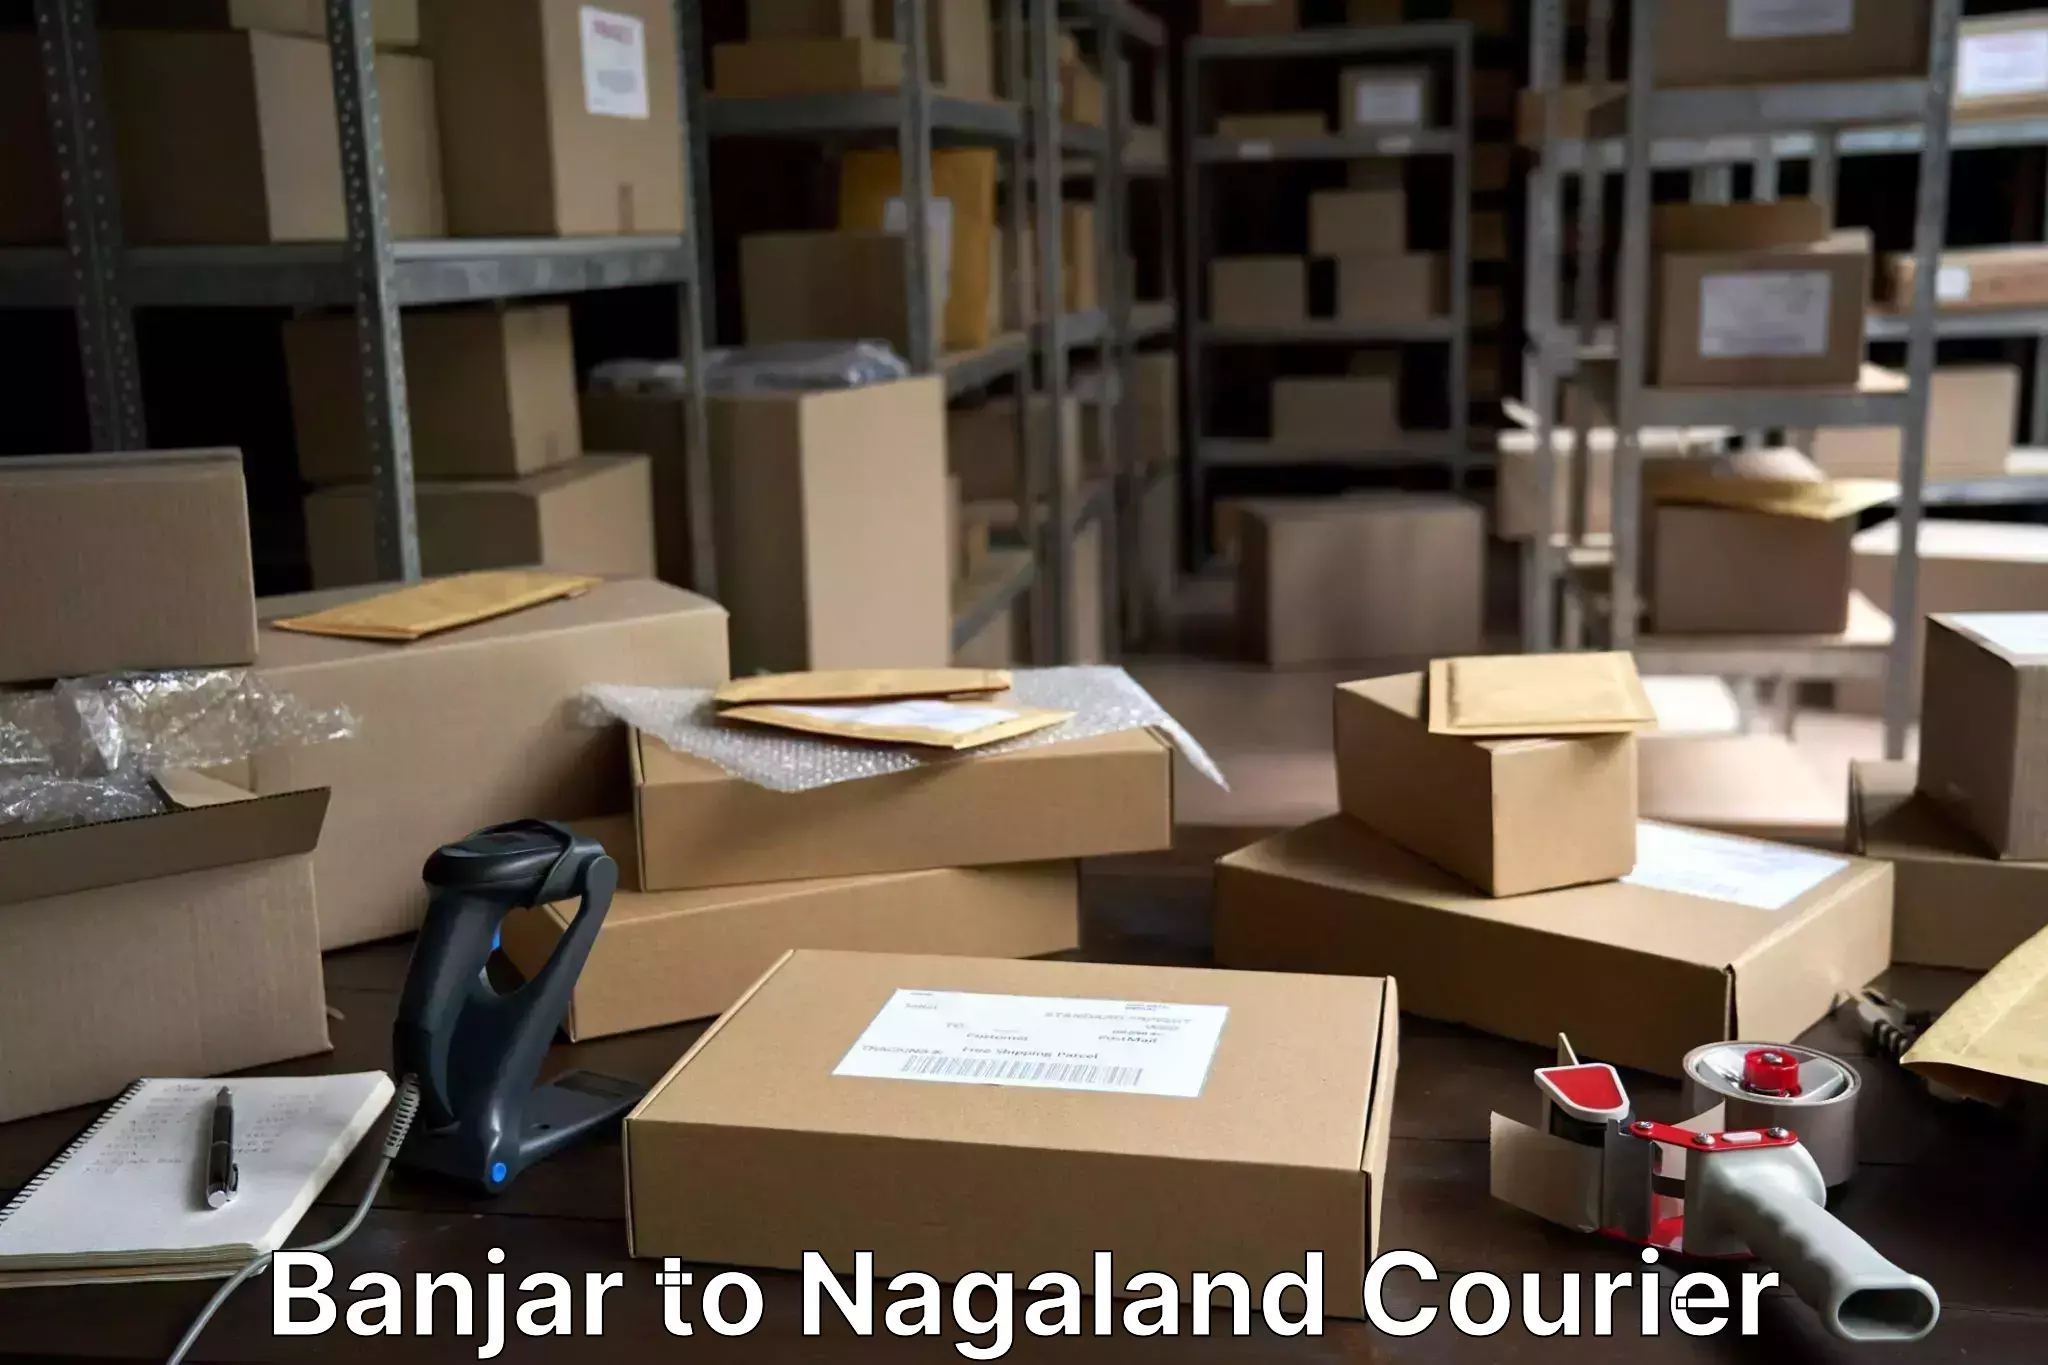 Baggage delivery solutions Banjar to NIT Nagaland